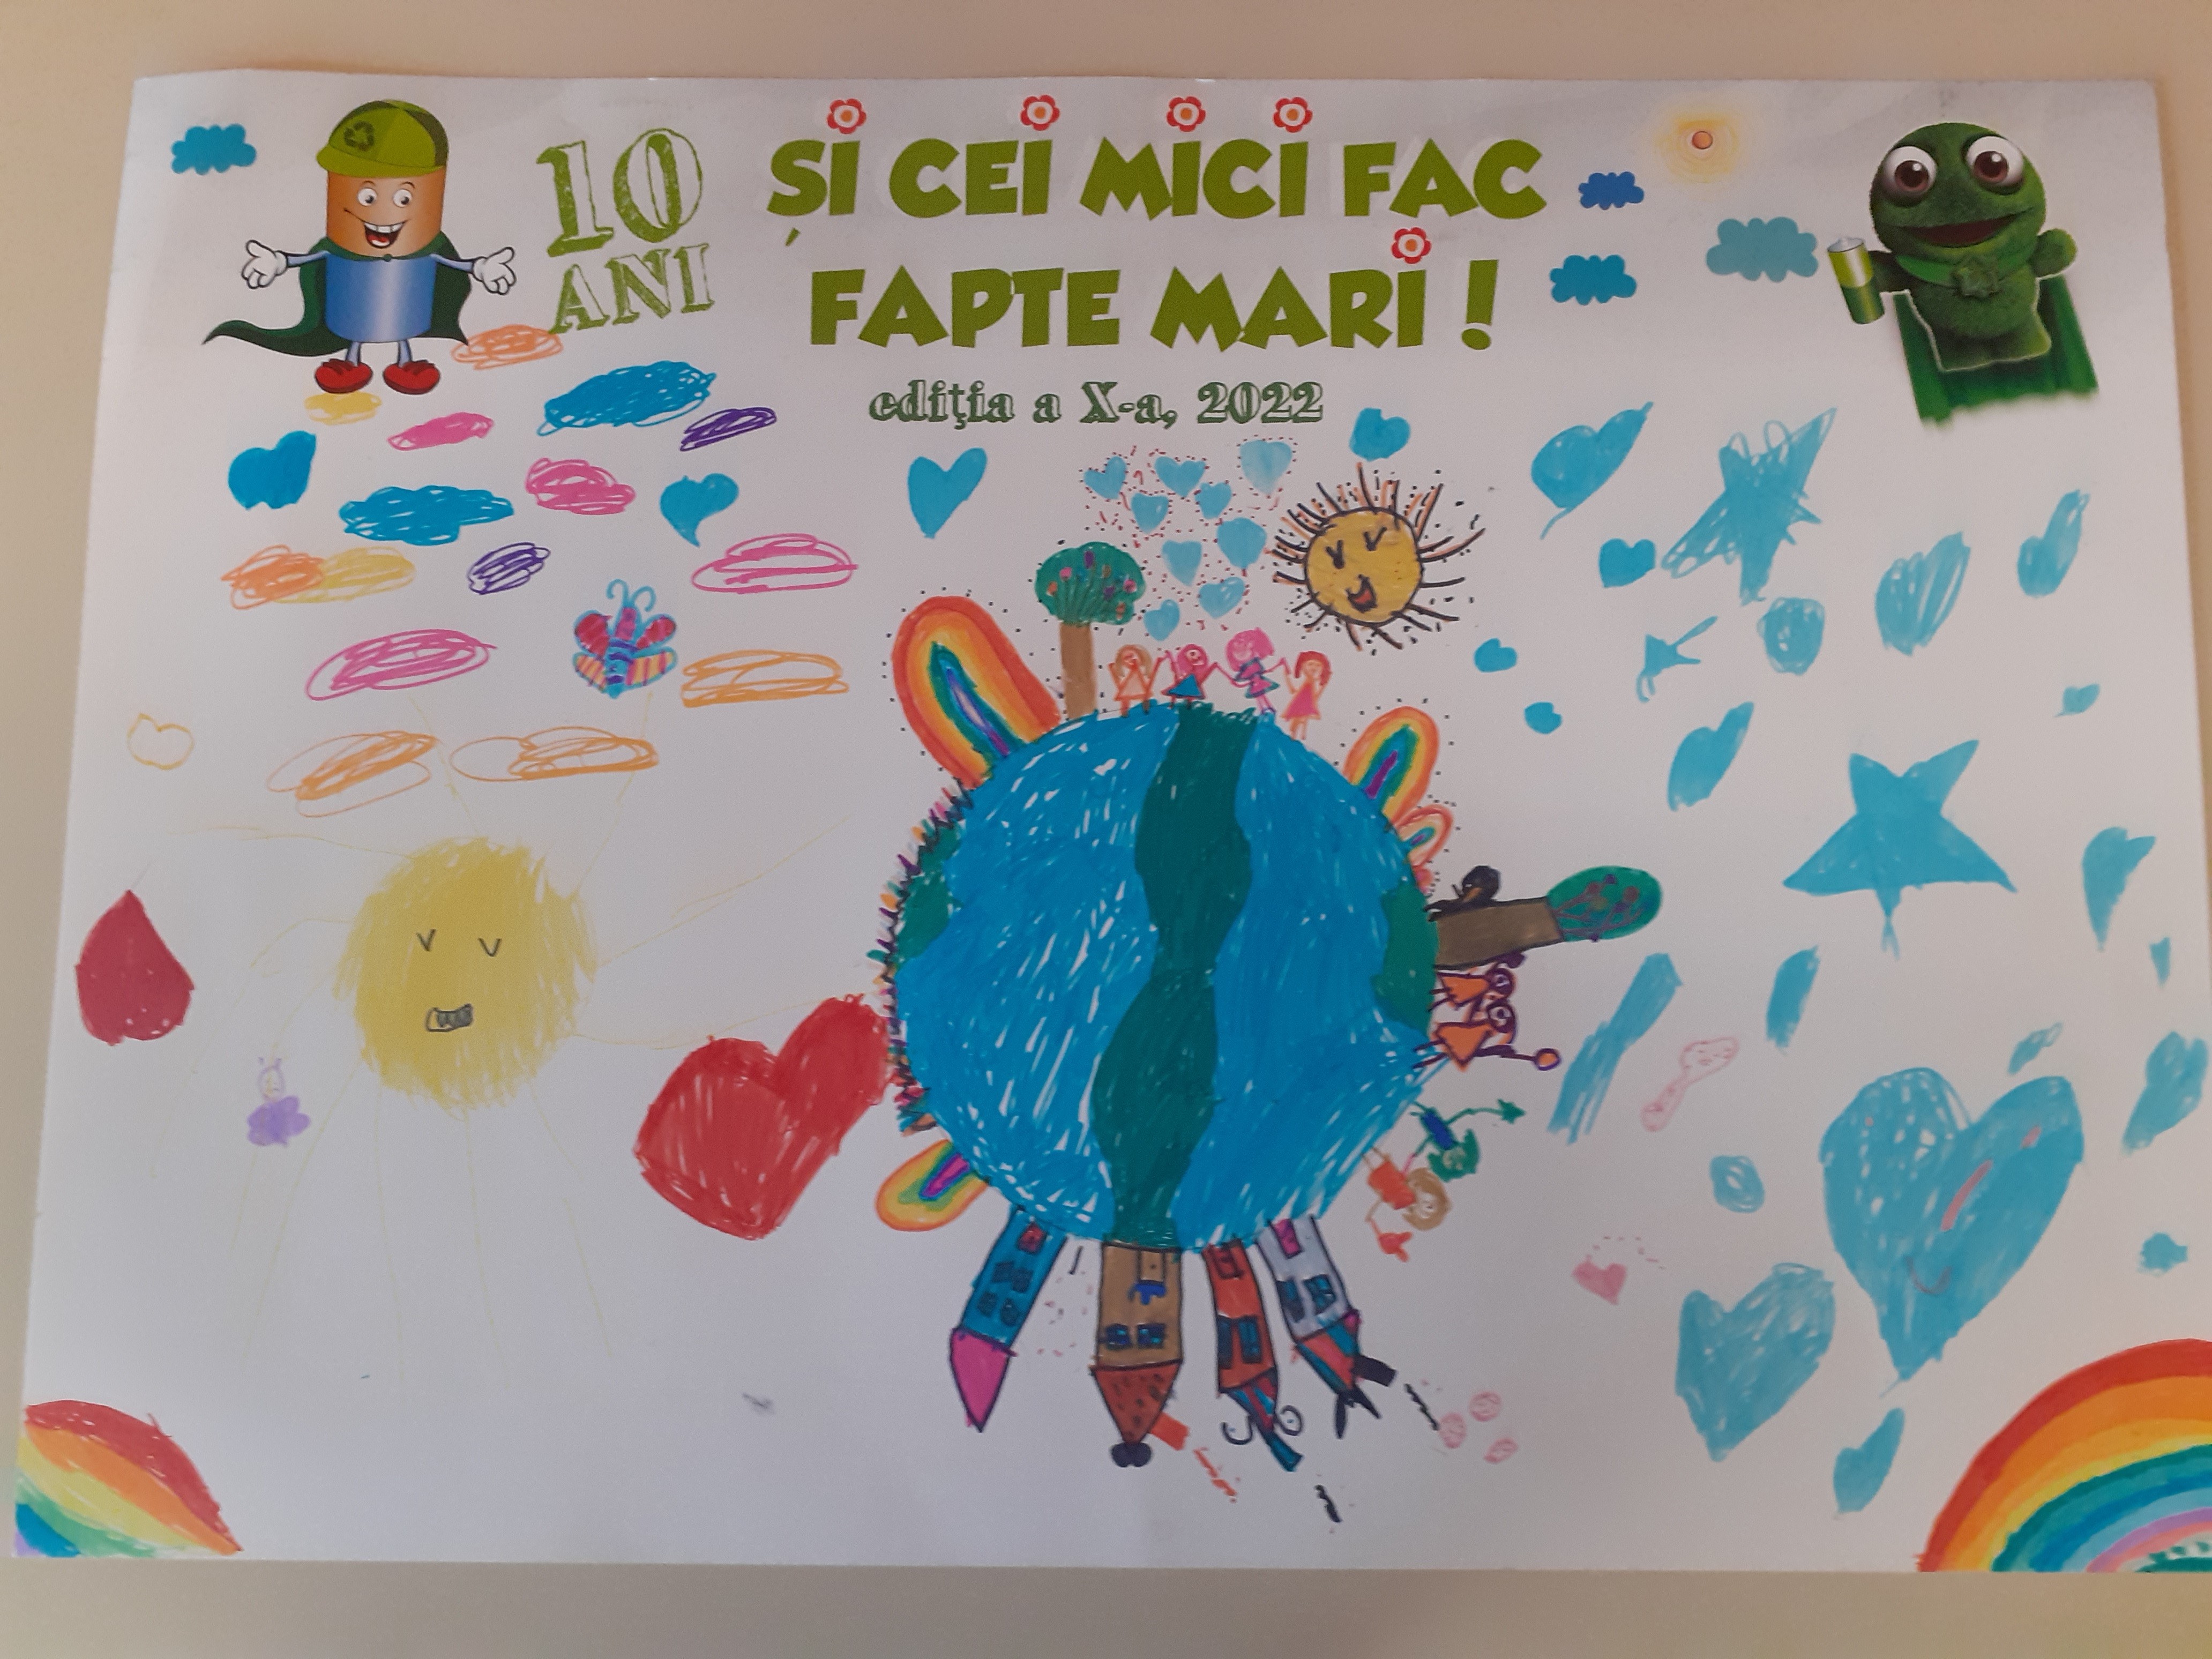 Unchanged promotion theme Ediție aniversară „Și cei mici fac fapte mari”: 365 de grădinițe  participante - ECOTIC